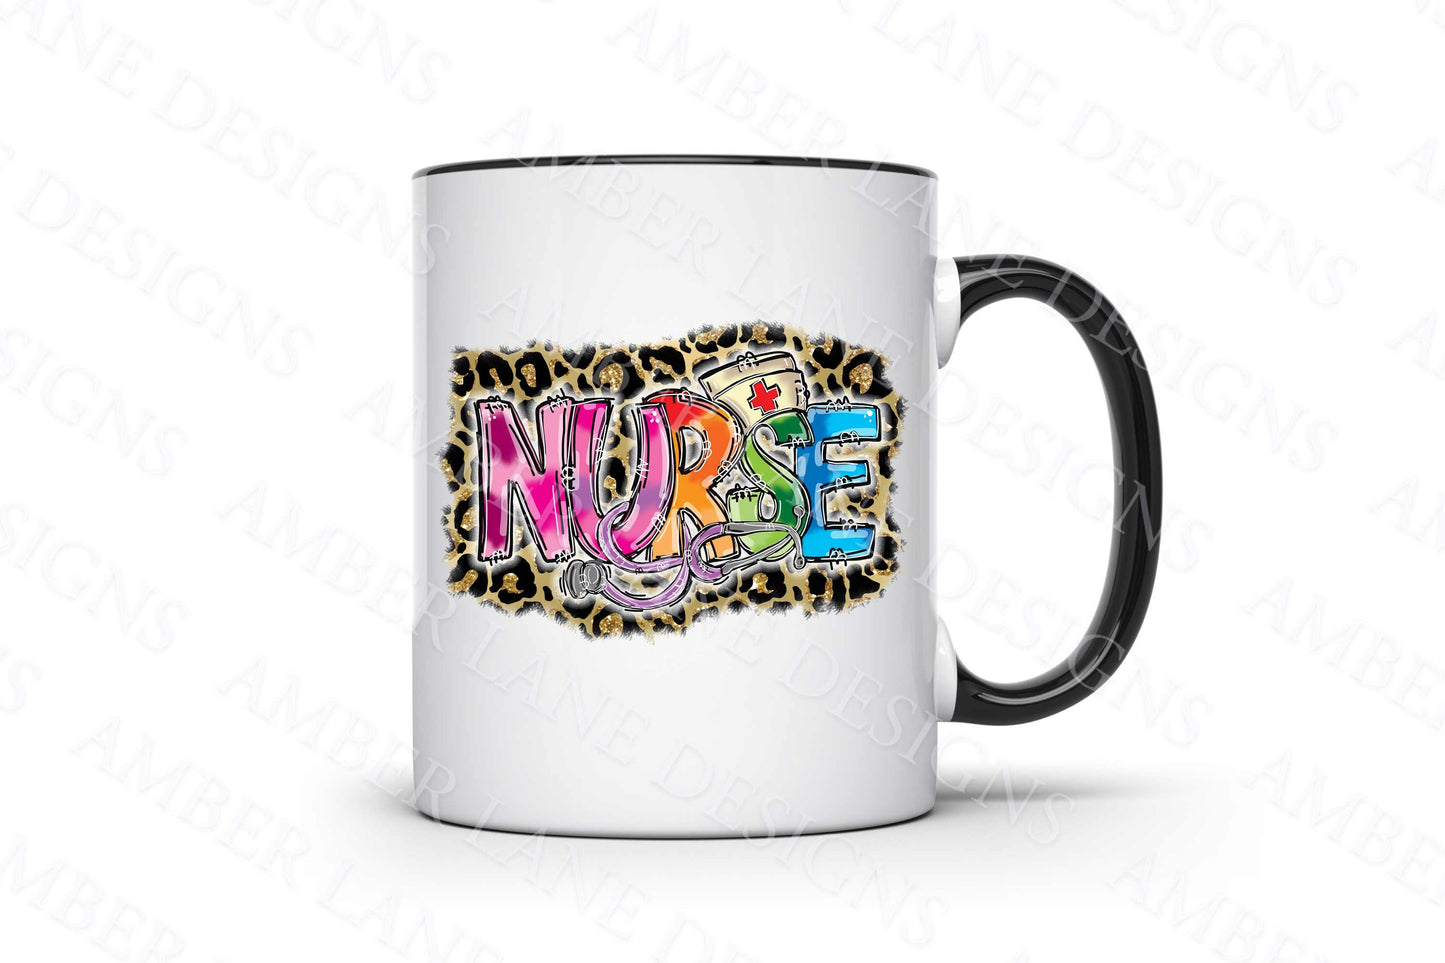 nurse mug for sublimation